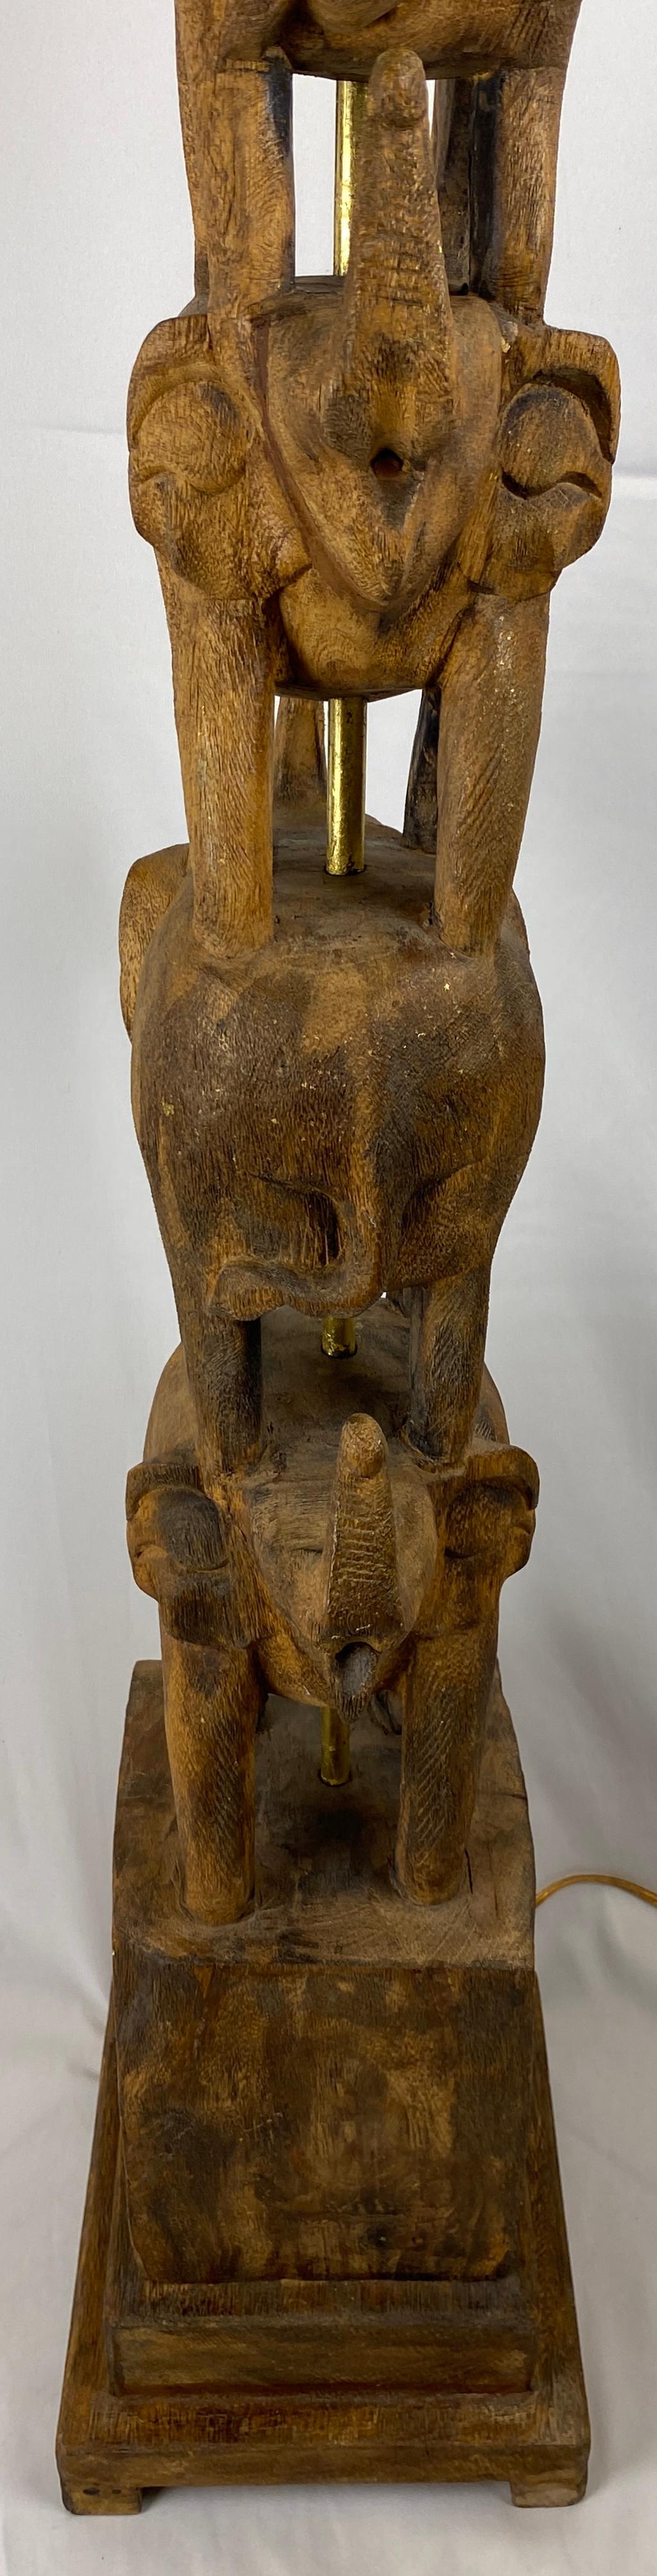 Rare et unique, lampadaire organique moderne sculpté à la main avec de multiples éléphants, conçu par Frederic Cooper. Le tout en bois massif, rehaussé de petites traces de feuilles d'or. Le centre du laiton est recouvert de feuilles d'or et est en